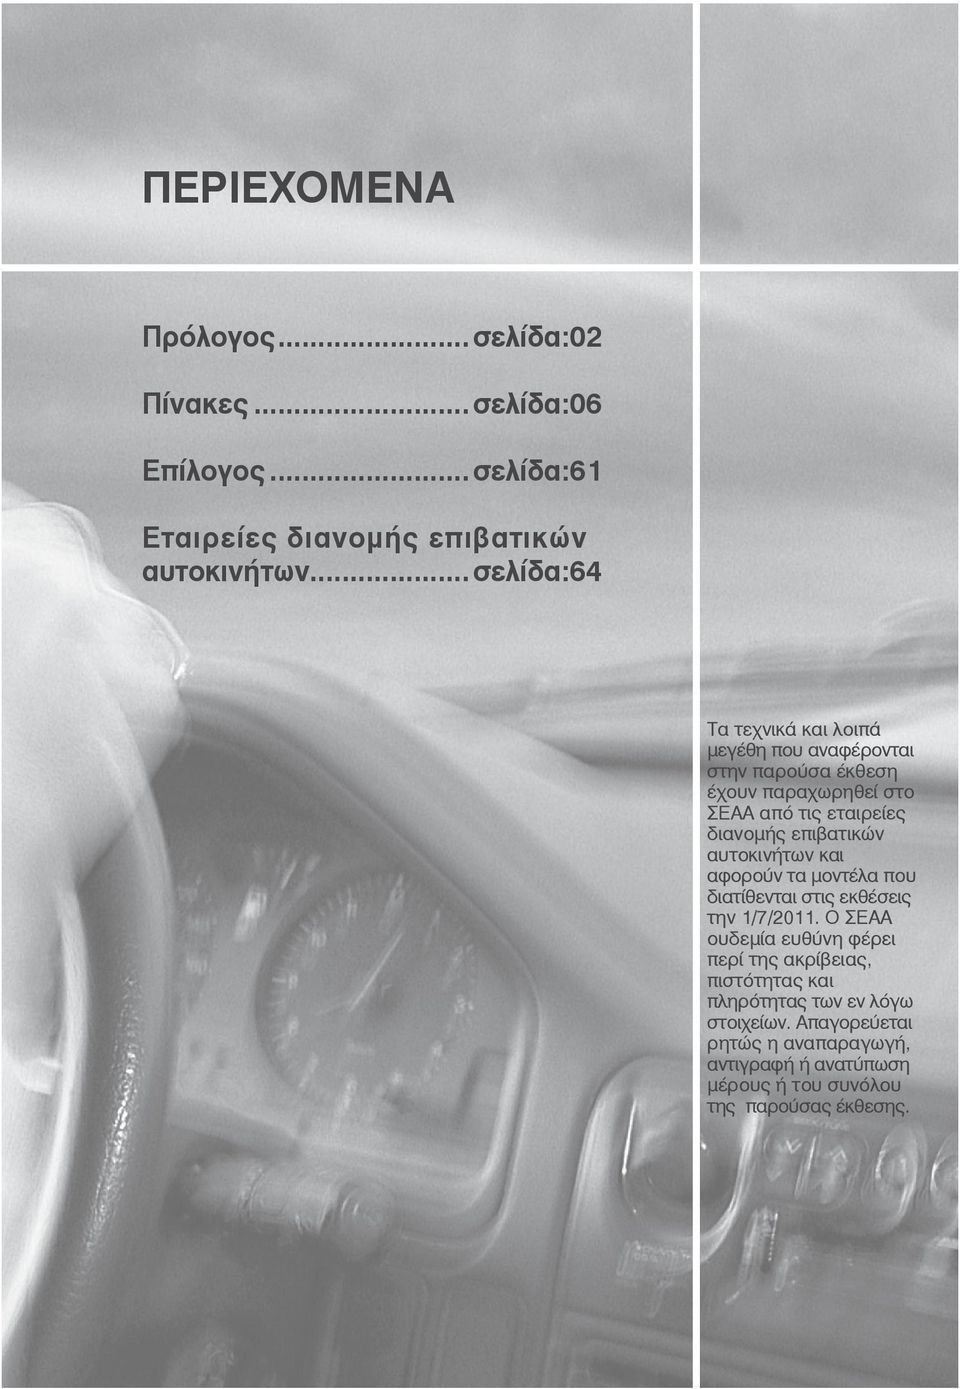 επιβατικών αυτοκινήτων και αφορούν τα μοντέλα που διατίθενται στις εκθέσεις την 1/7/2011.